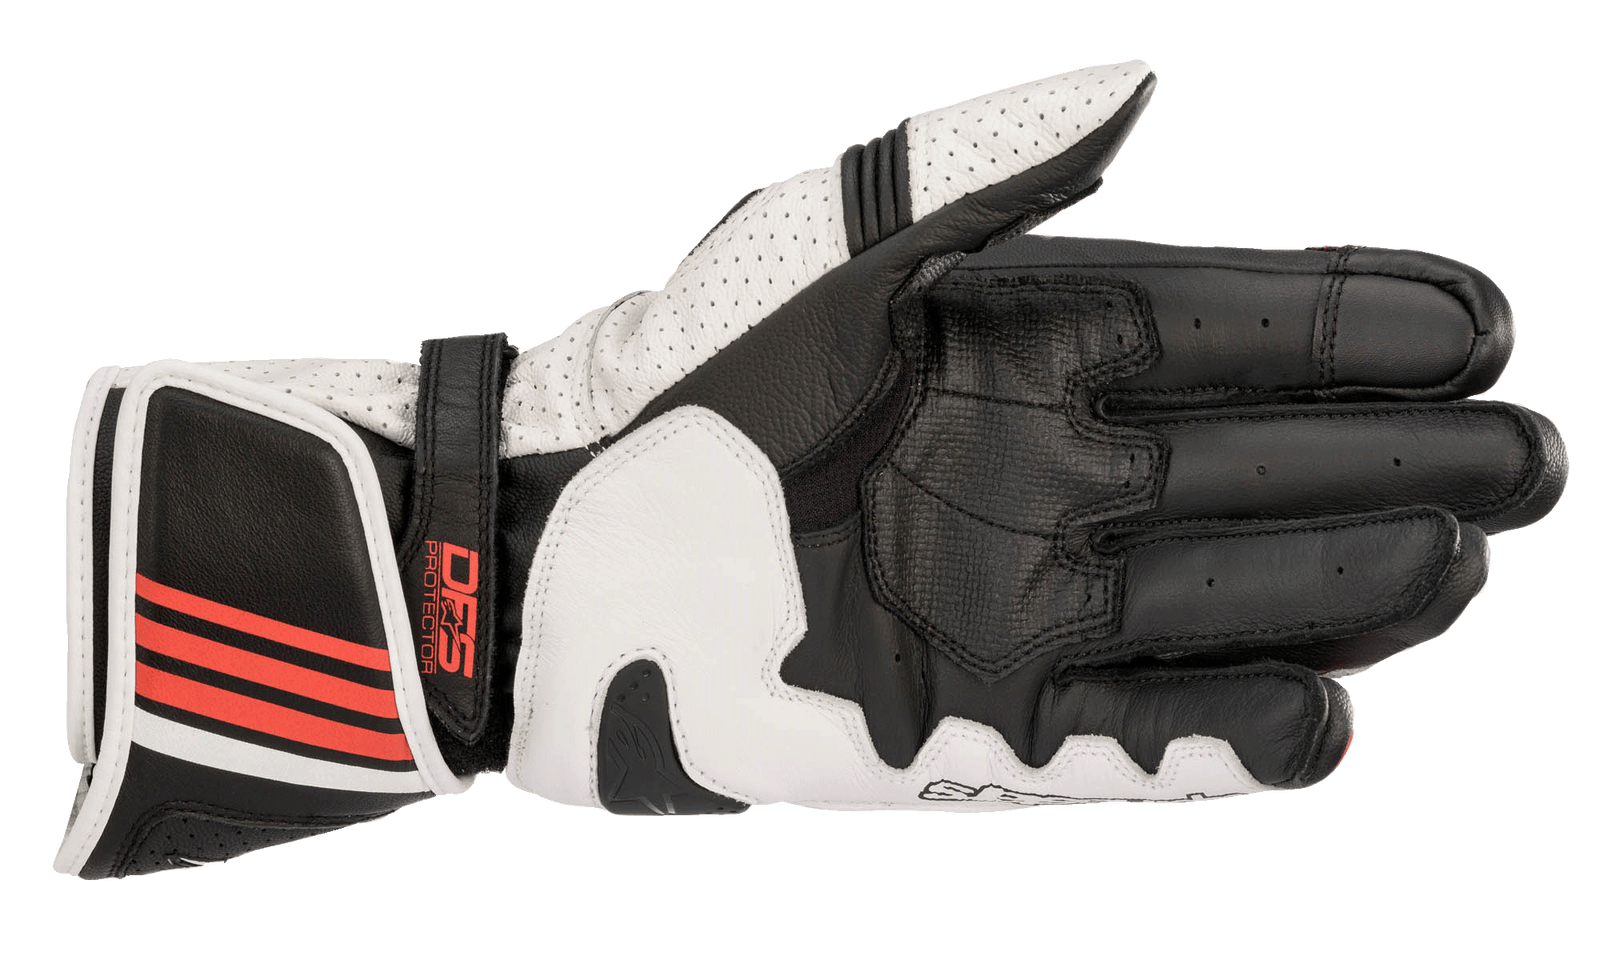 GP Plus R V2 Gloves